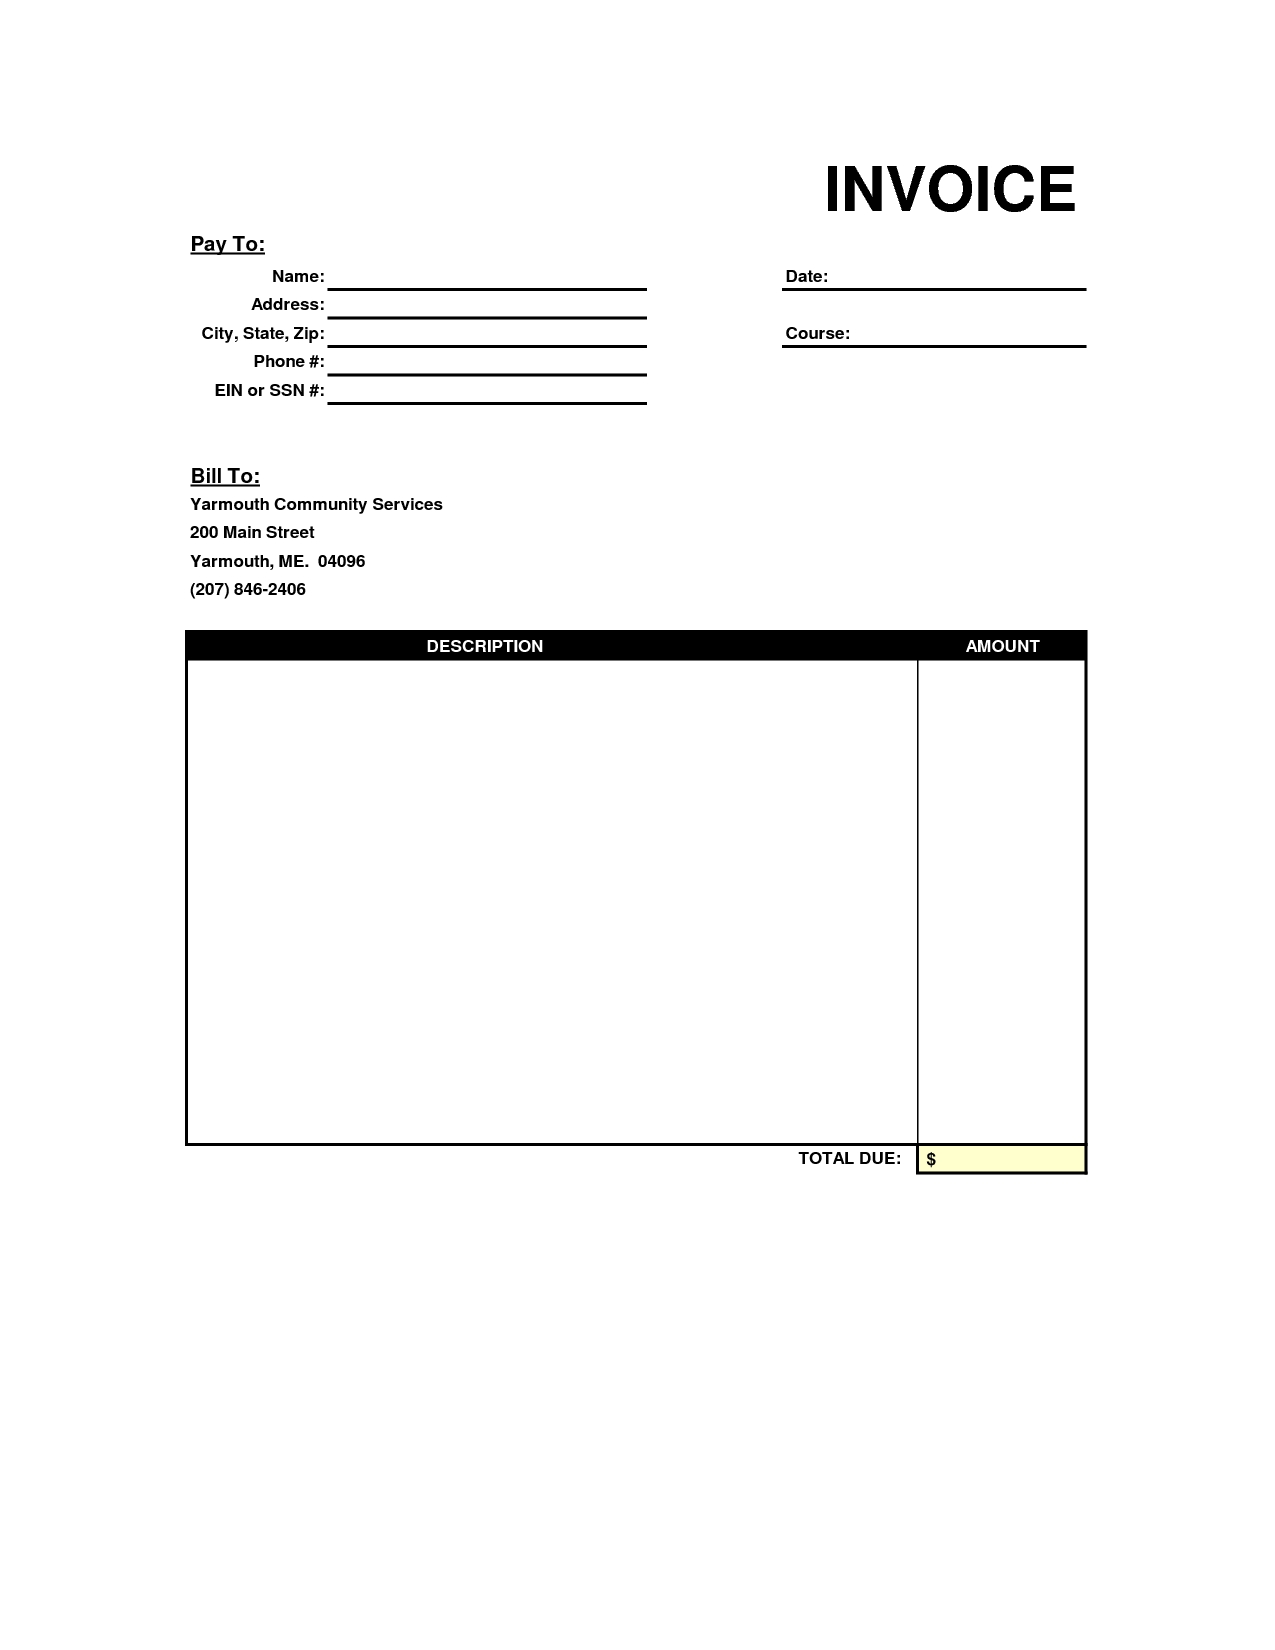 blank invoice templates blank invoice template blankinvoice 1275 X 1650